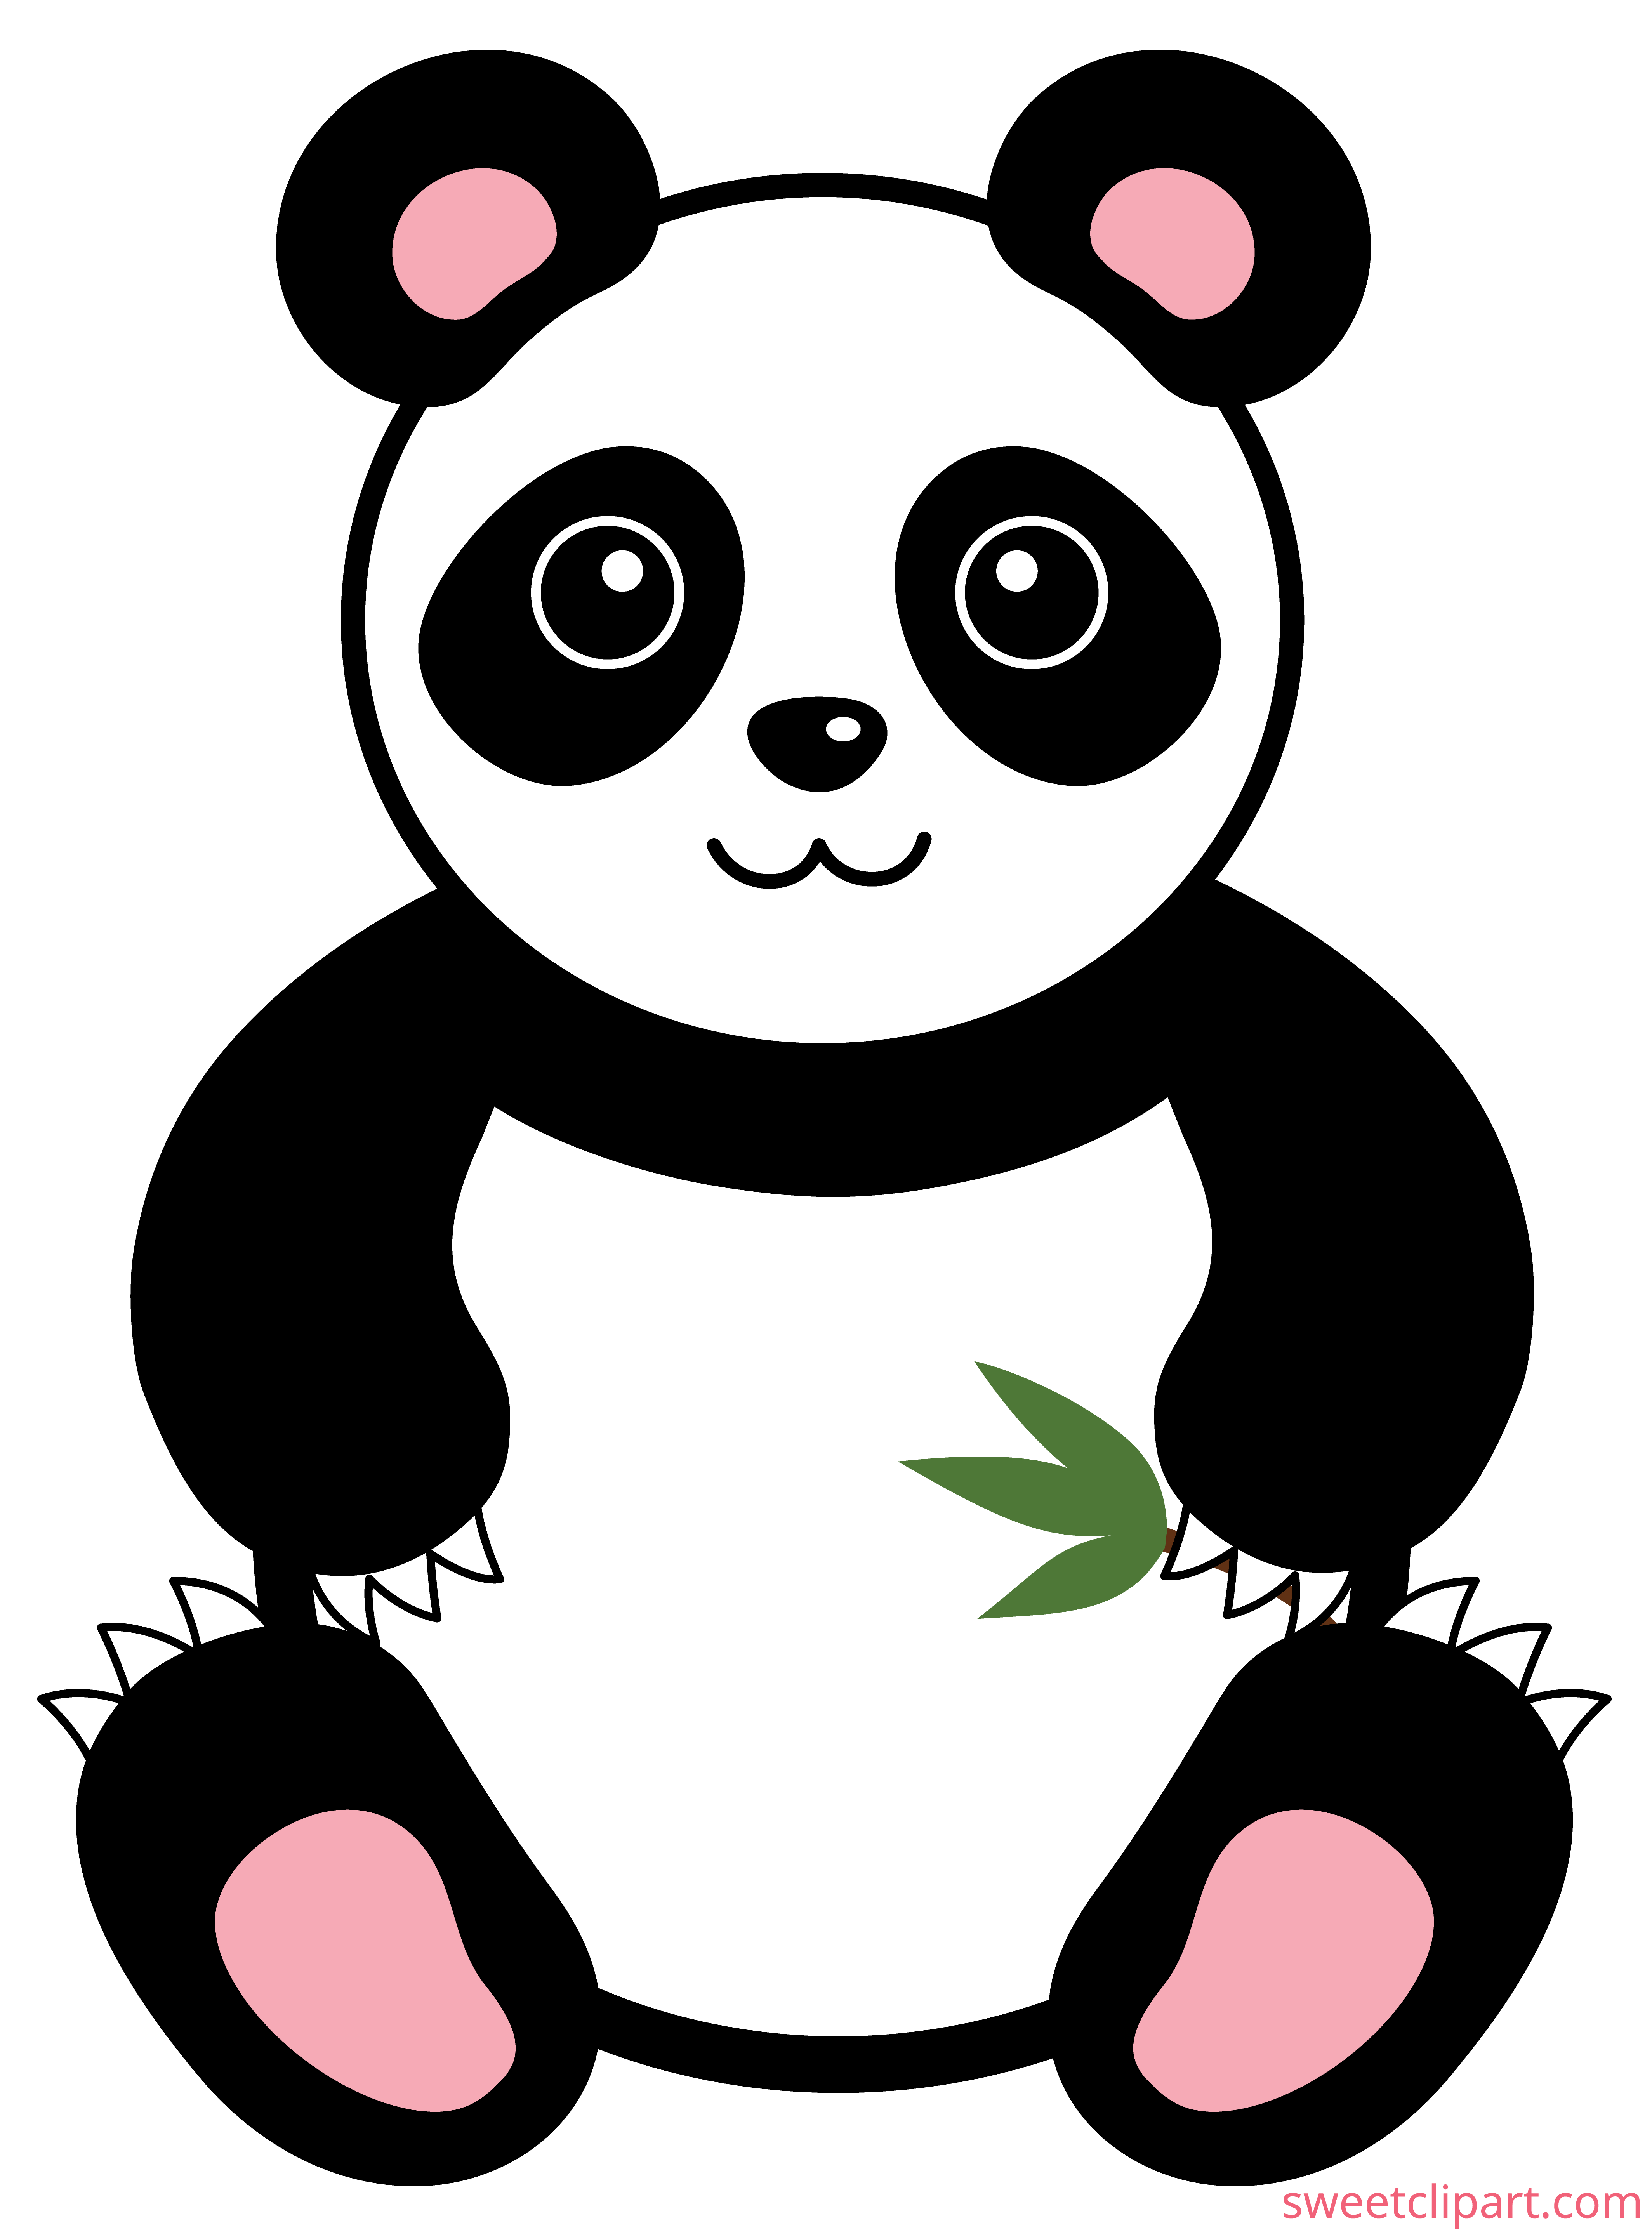 Cute Panda Bear Clip Art - Sweet Clip Art